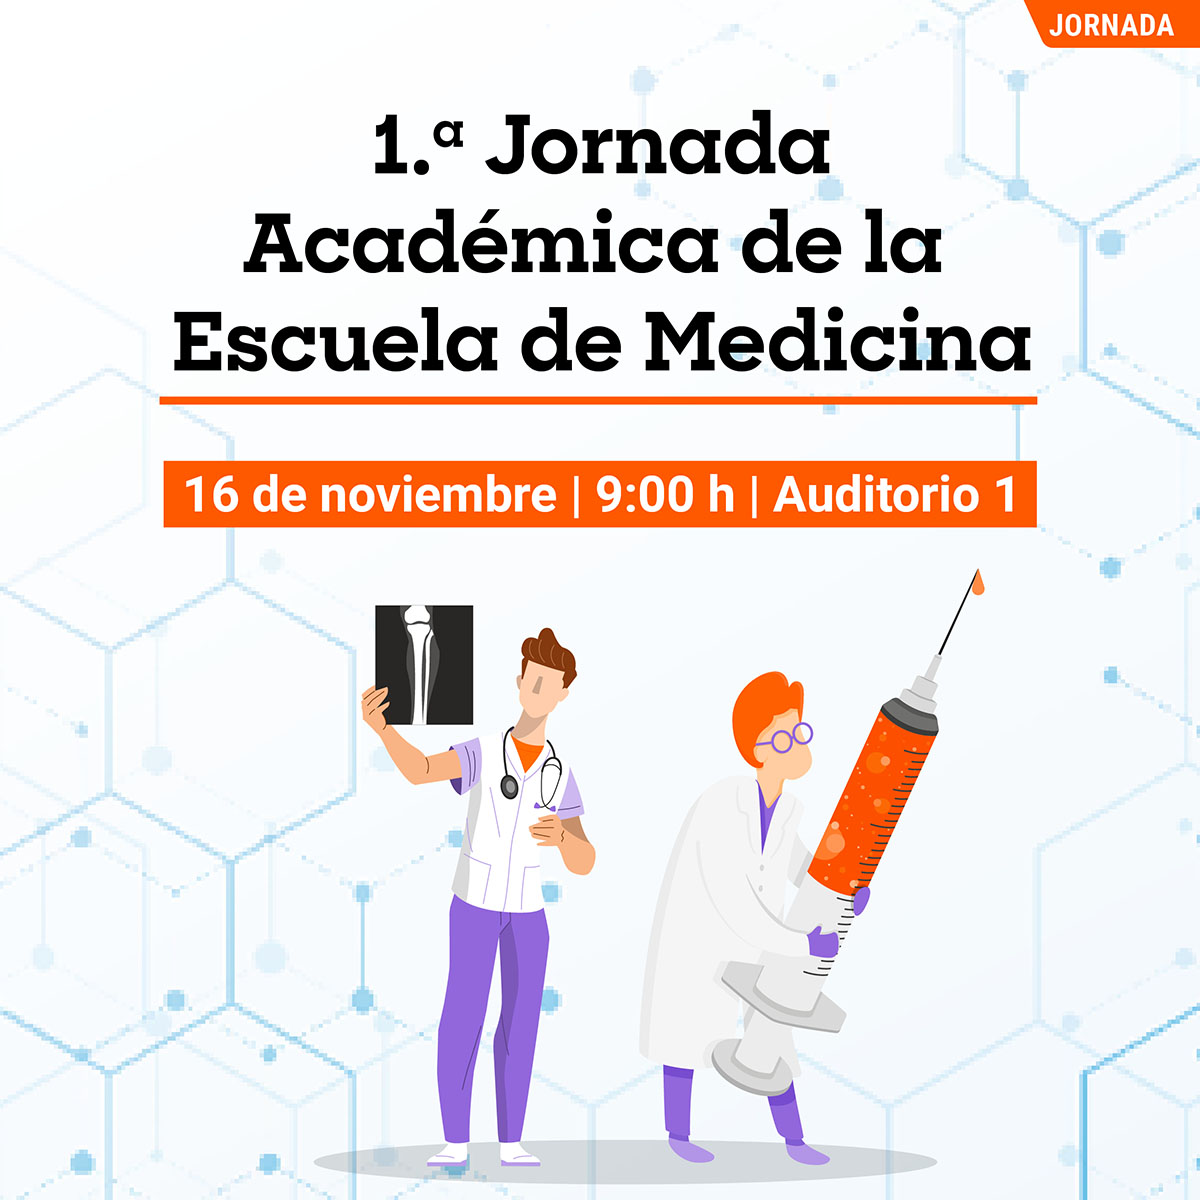 1.a Jornada Académica de la Escuela de Medicina